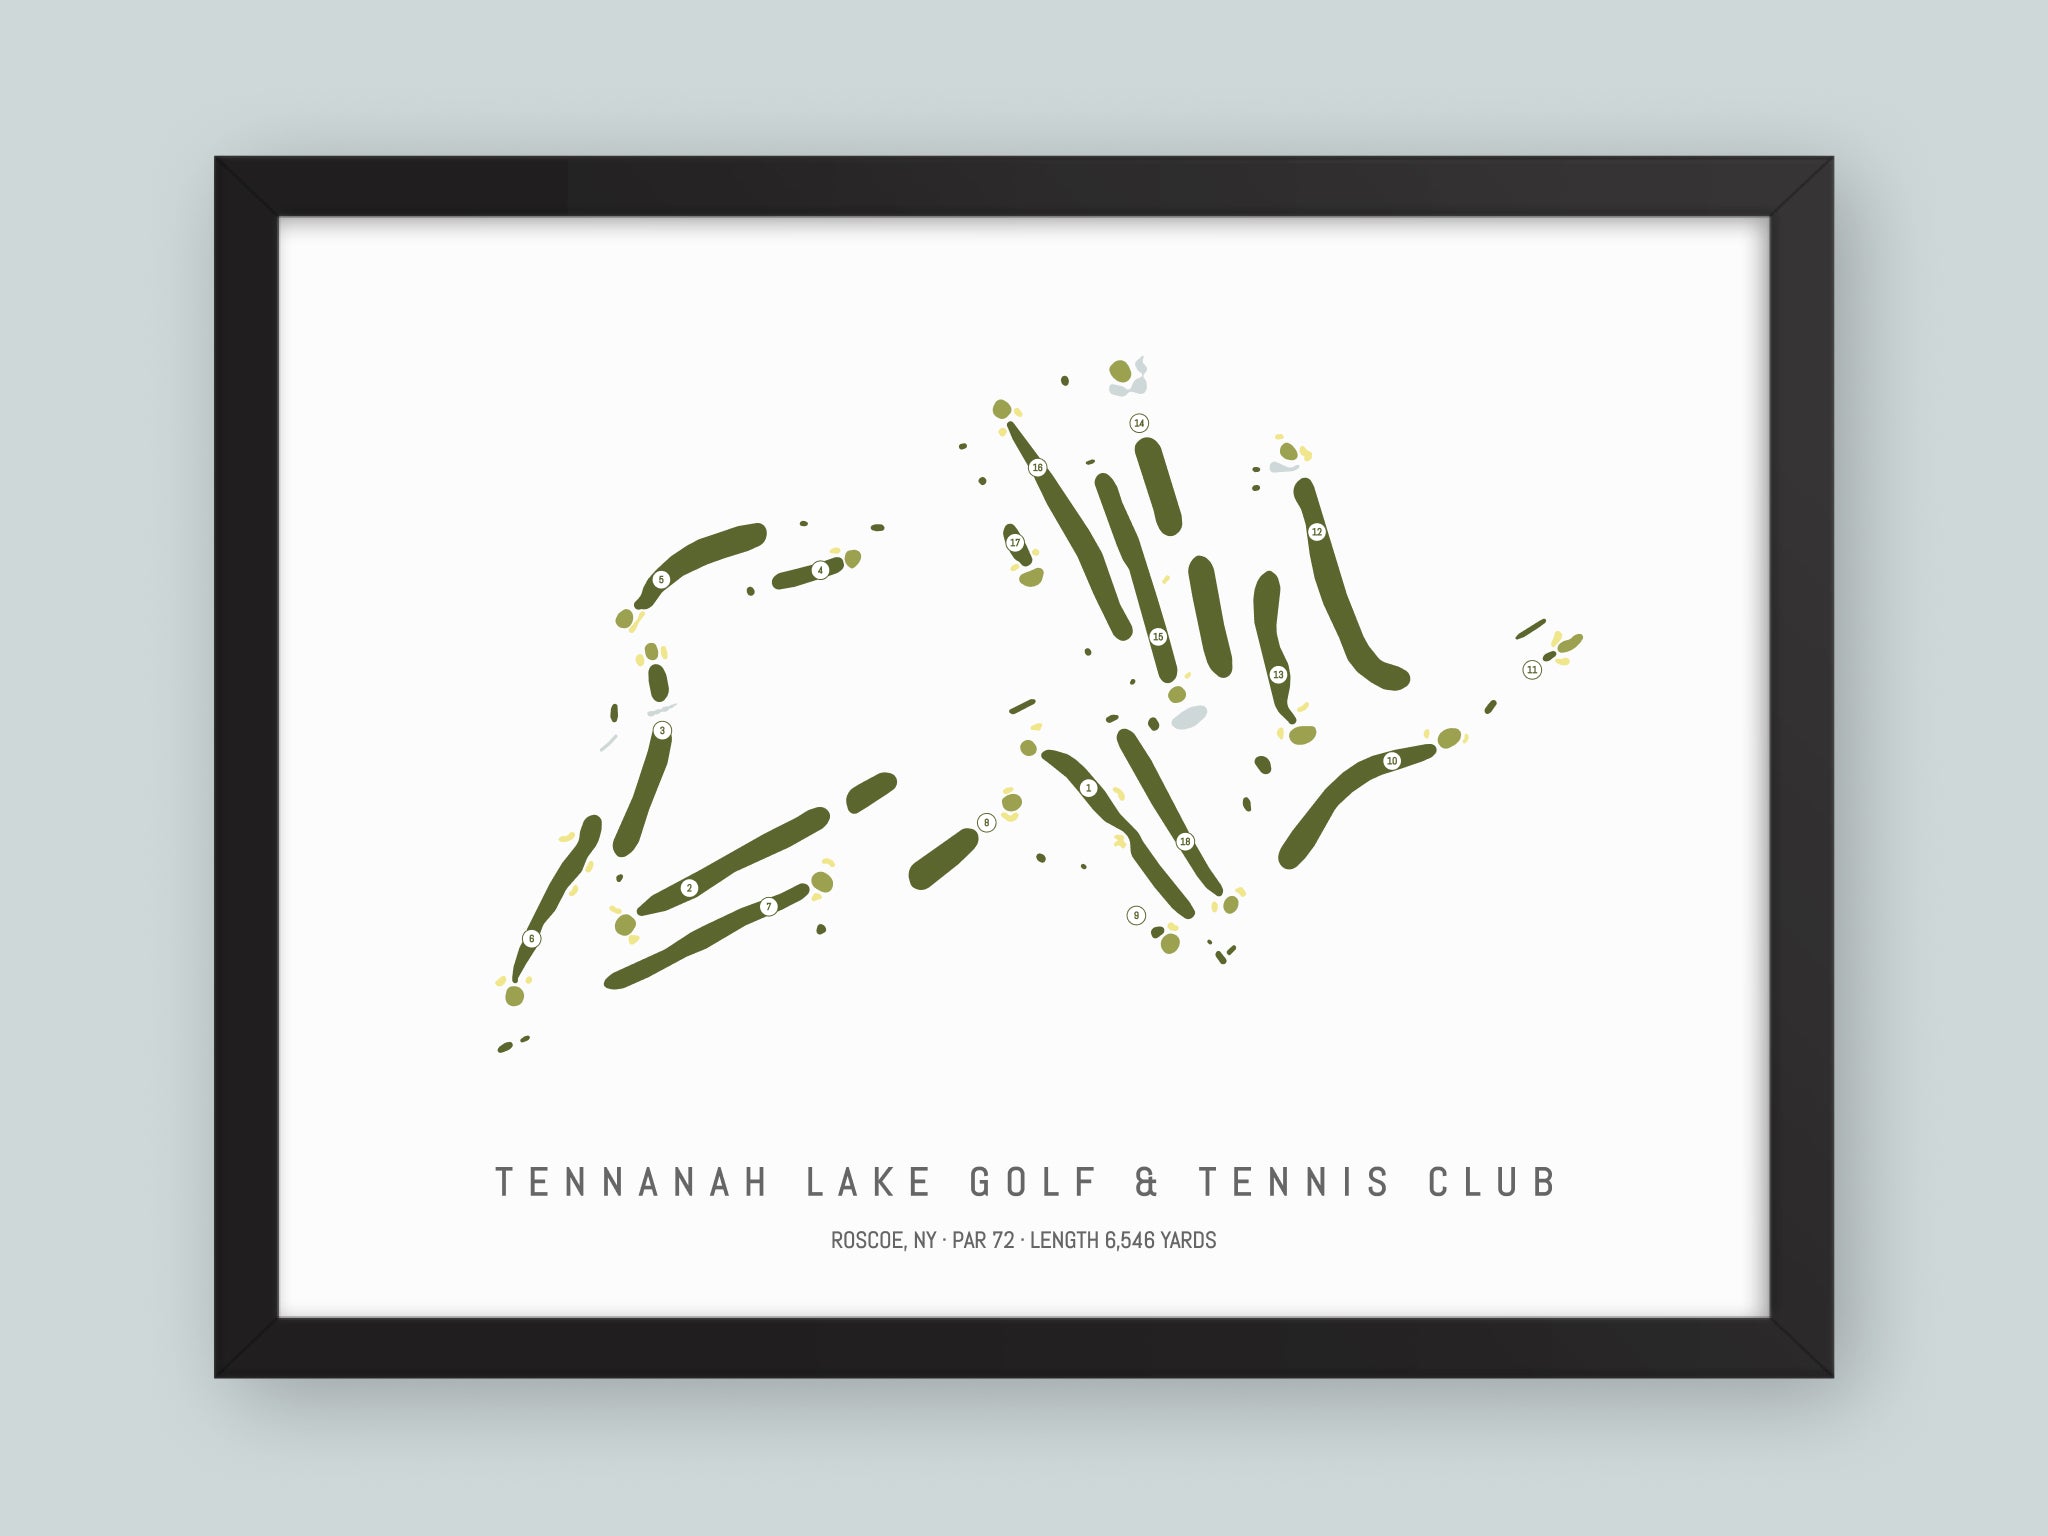 Tennanah Lake Golf & Tennis Club